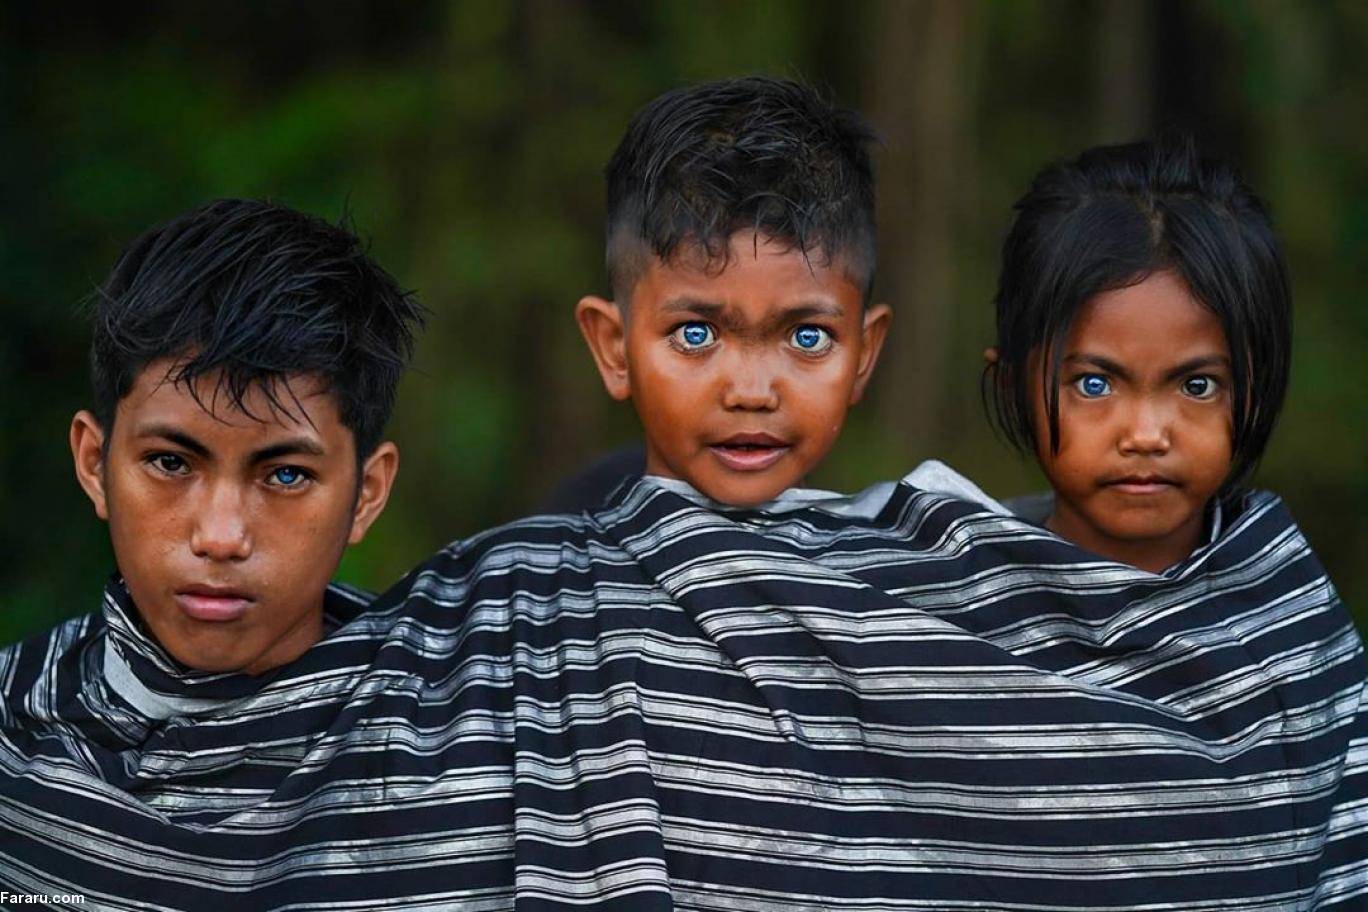 Самого редкого человека. Варденбурга синдром Ваарденбурга. Племя в Индонезии с синими глазами бутунг. Племя бутон на острове бутунг Индонезии.